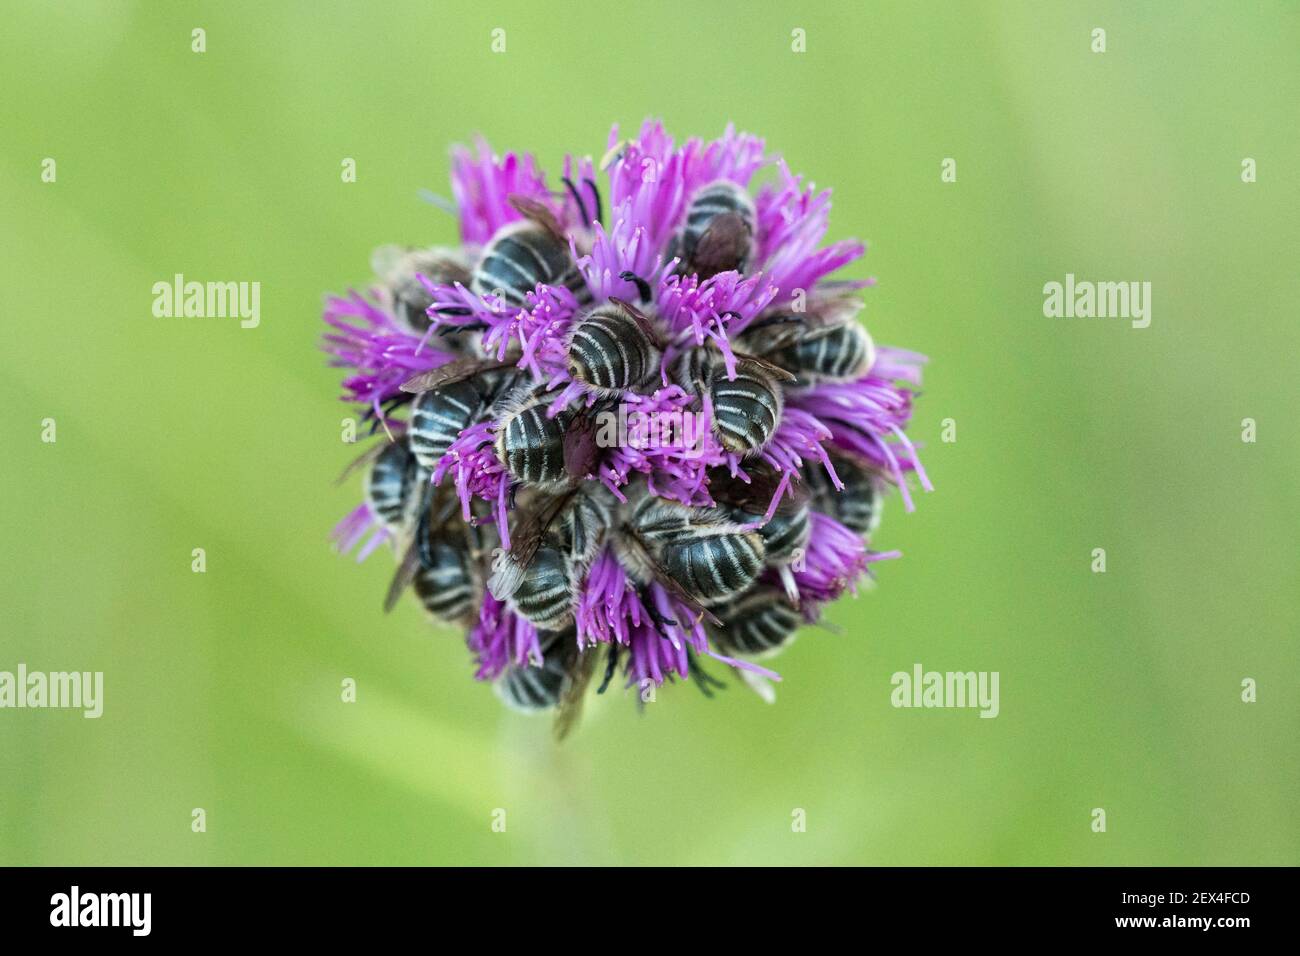 Abeilles endormeuses (Apidae sp) enfouies dans l'inflorescence d'un Asteraceae à Pierrerue, Alpes-de-haute-Provence, France Banque D'Images